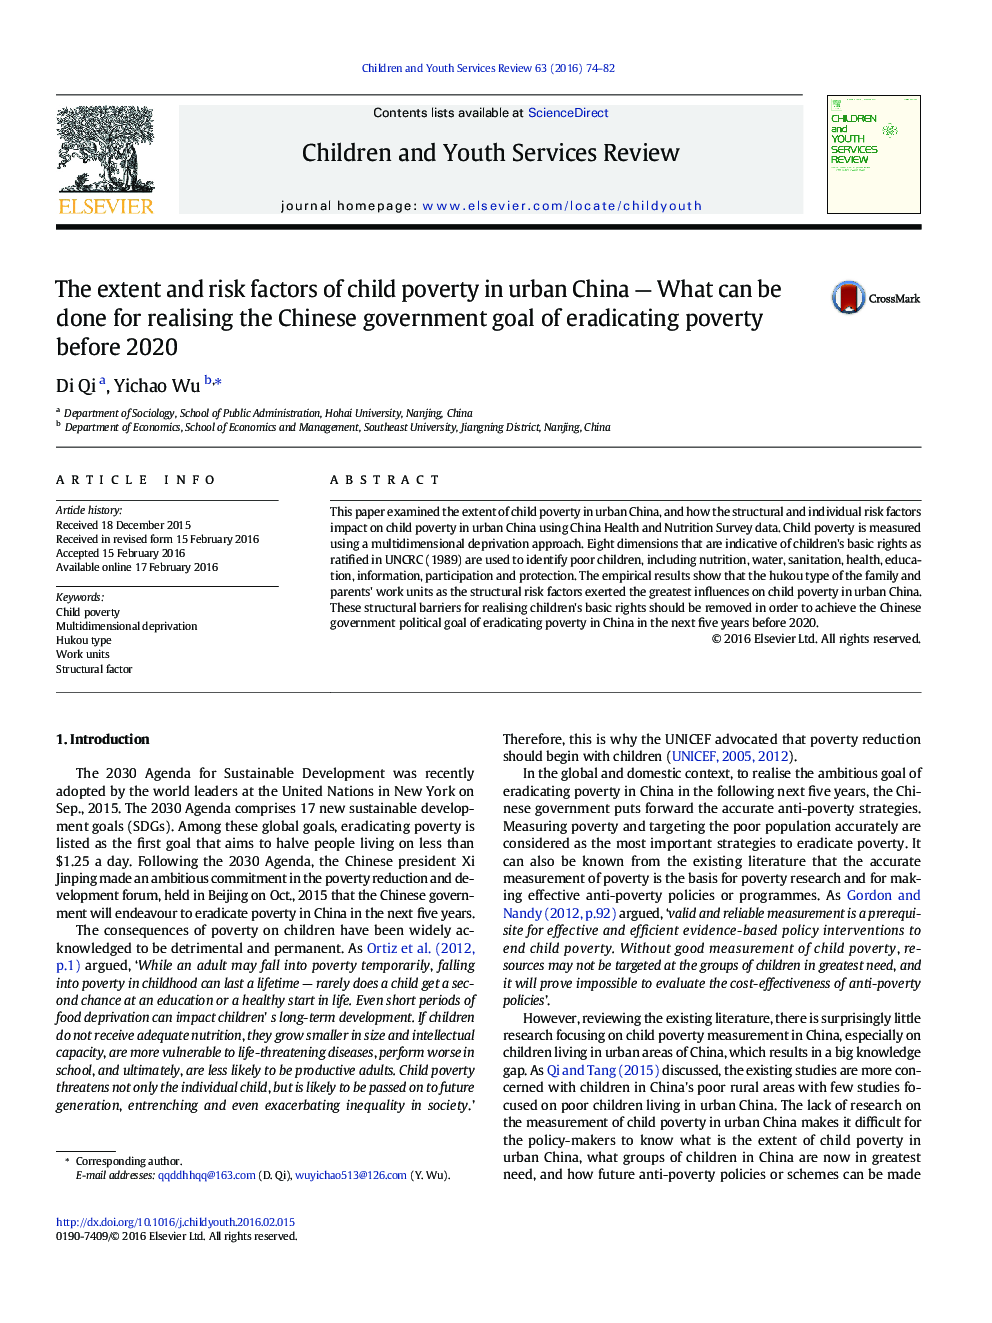 میزان و عوامل خطر فقر کودکان در مناطق روستایی چین - چه می تواند برای تحقق هدف دولت چین از فقر ریشه کن کردن قبل از سال 2020 انجام